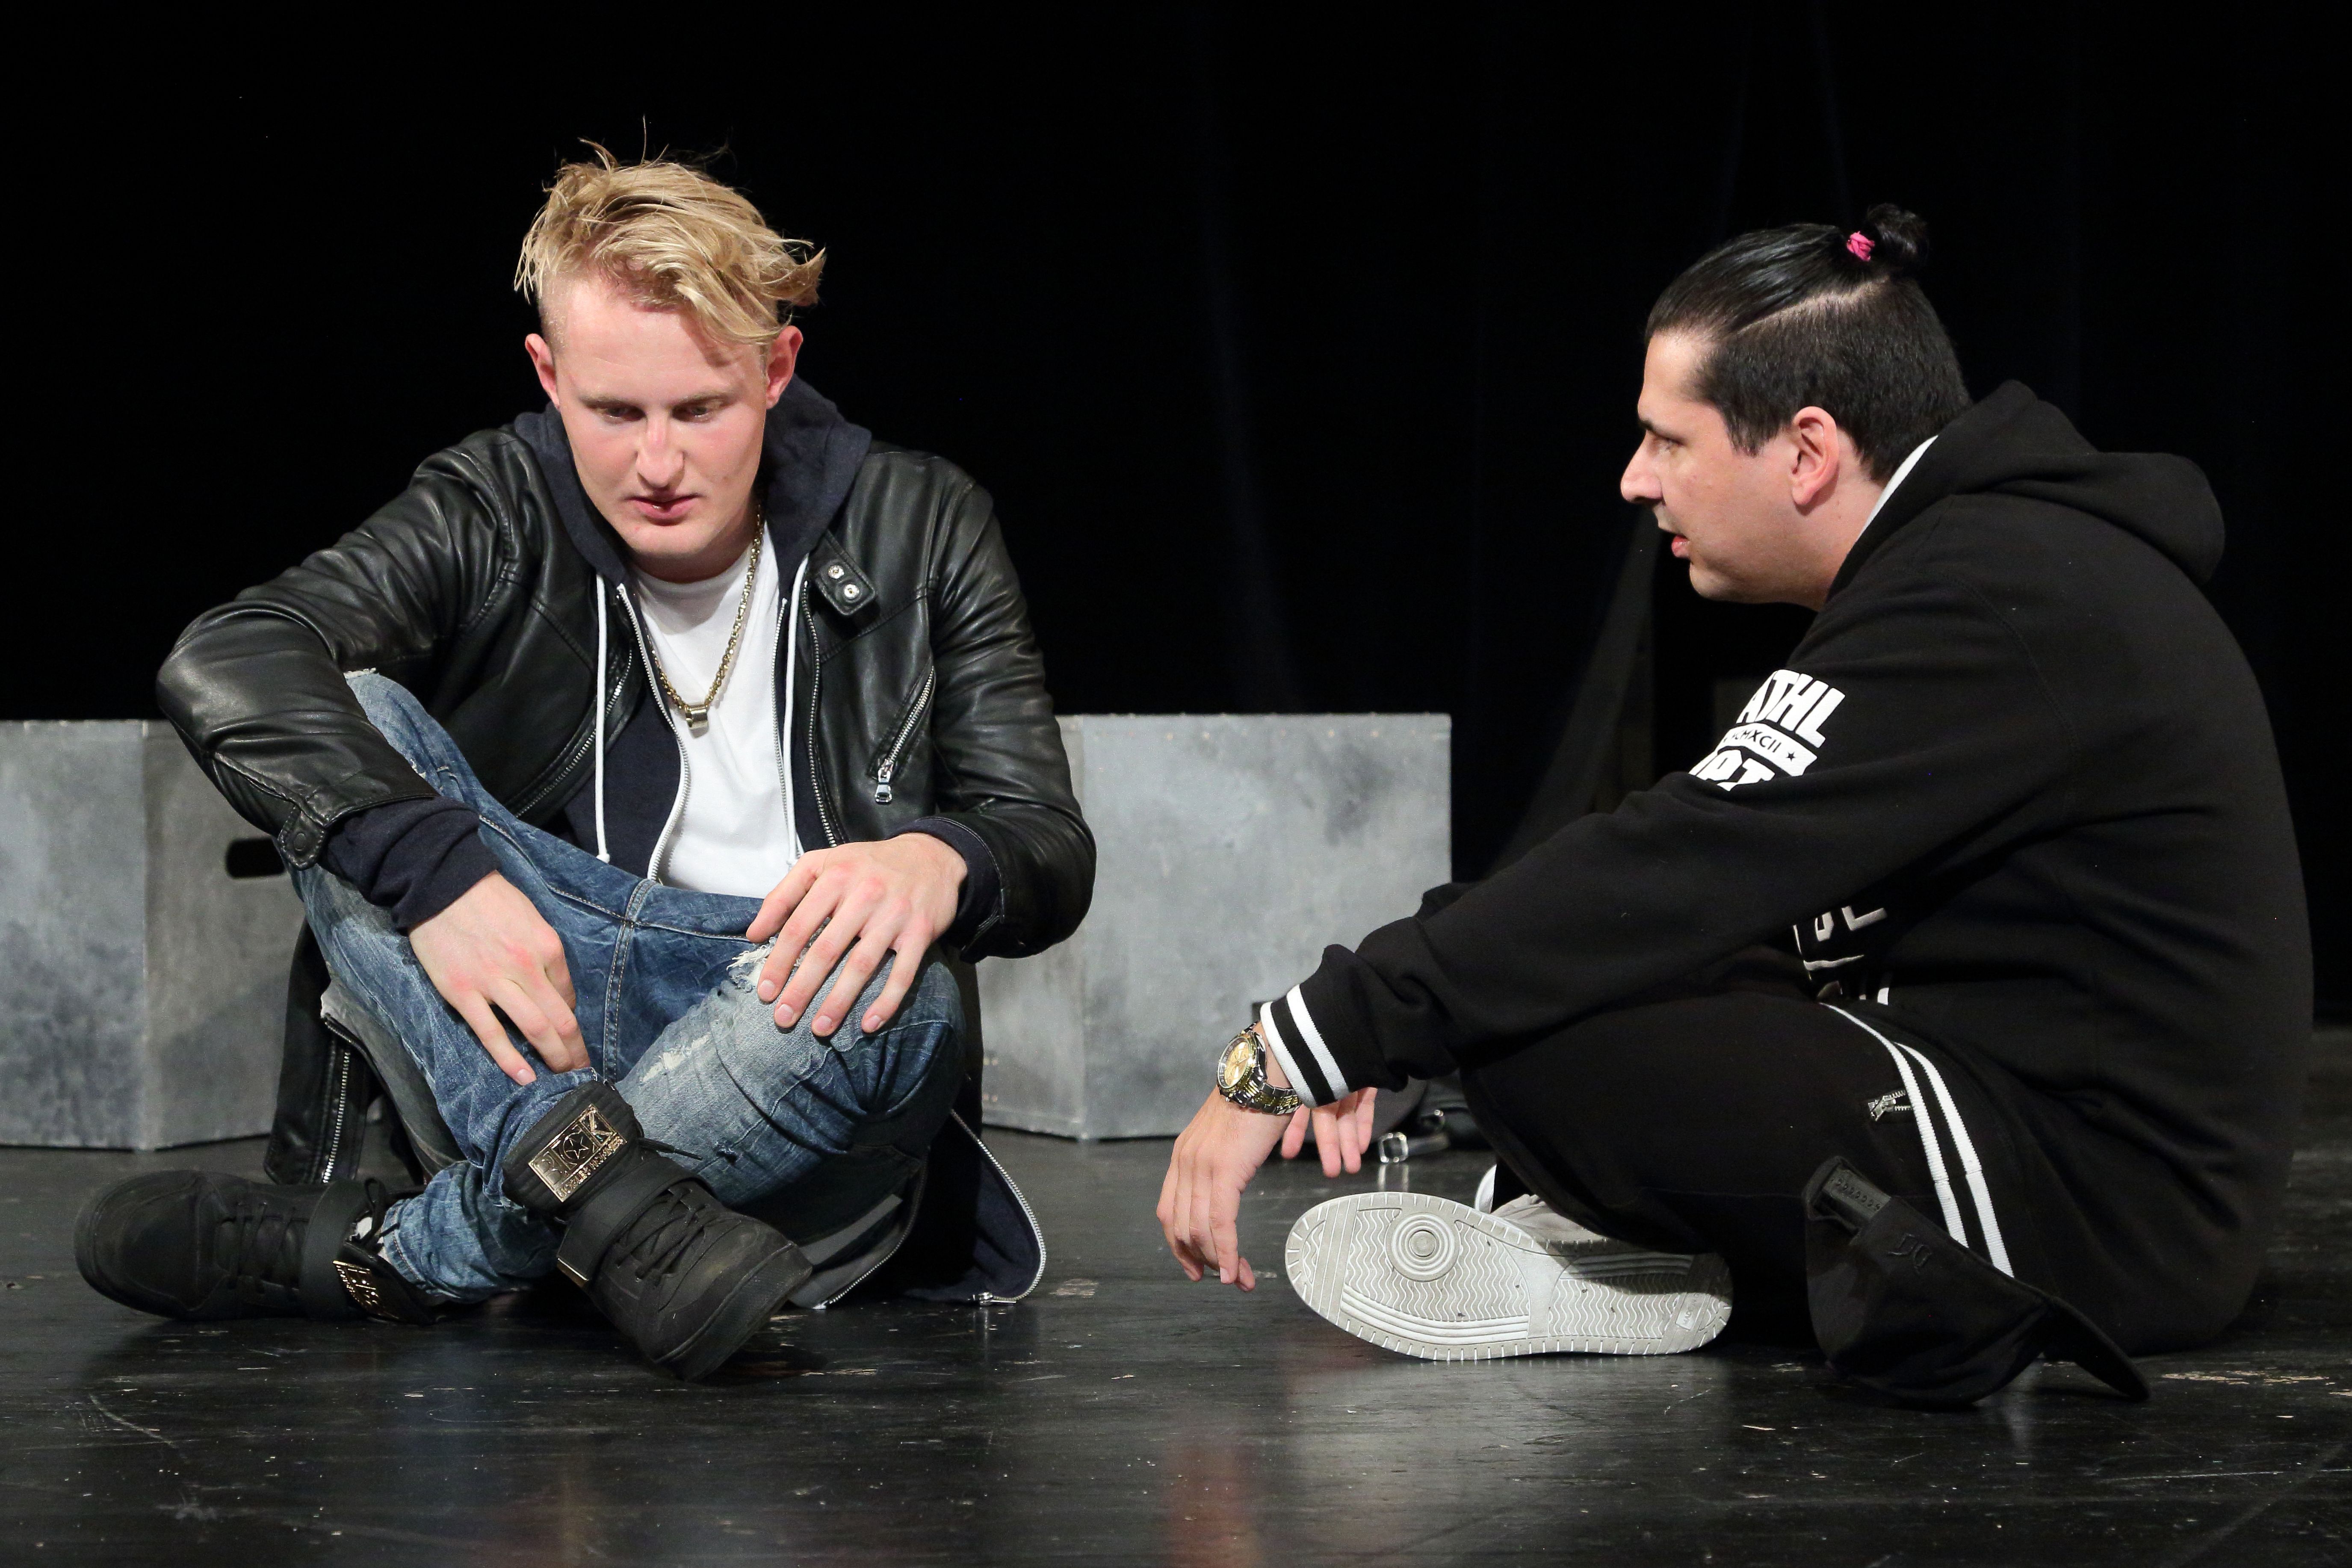 Szene aus dem Theaterstück Jungfrau ohne Paradies mit zwei Jugendlichen